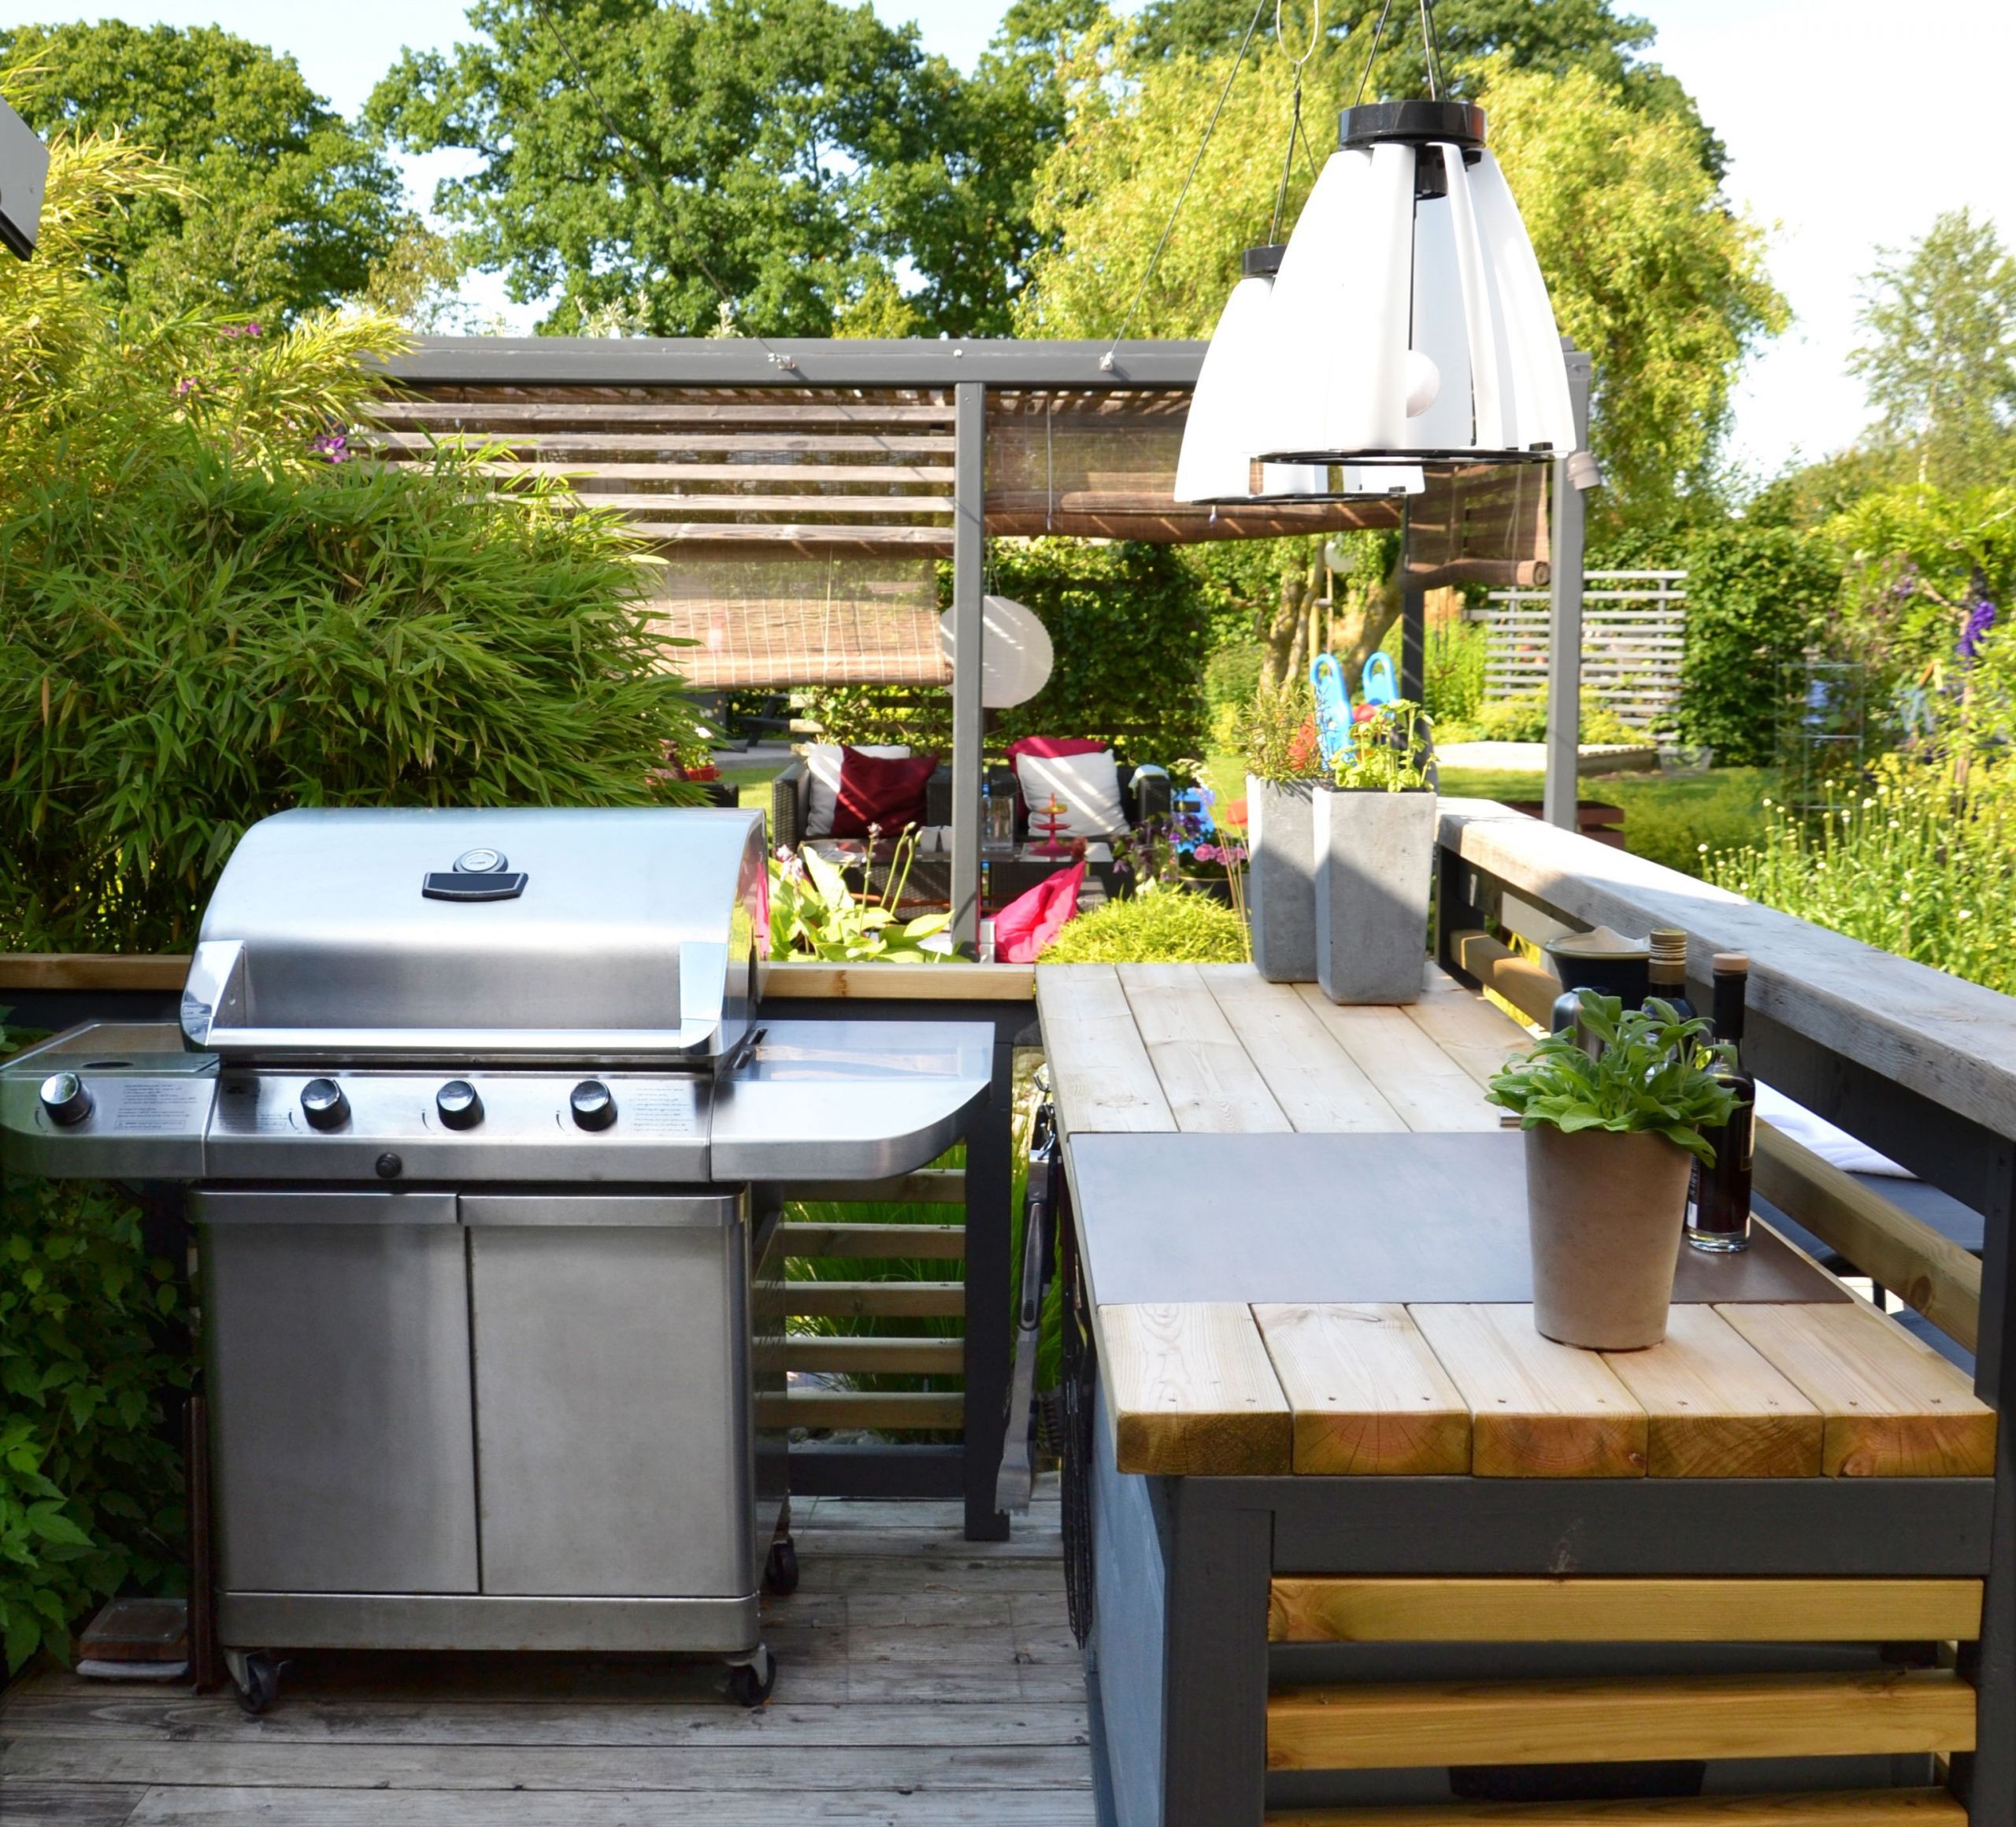 Outdoor Kitchen Plans Diy
 8 Best DIY Outdoor Kitchen Plans